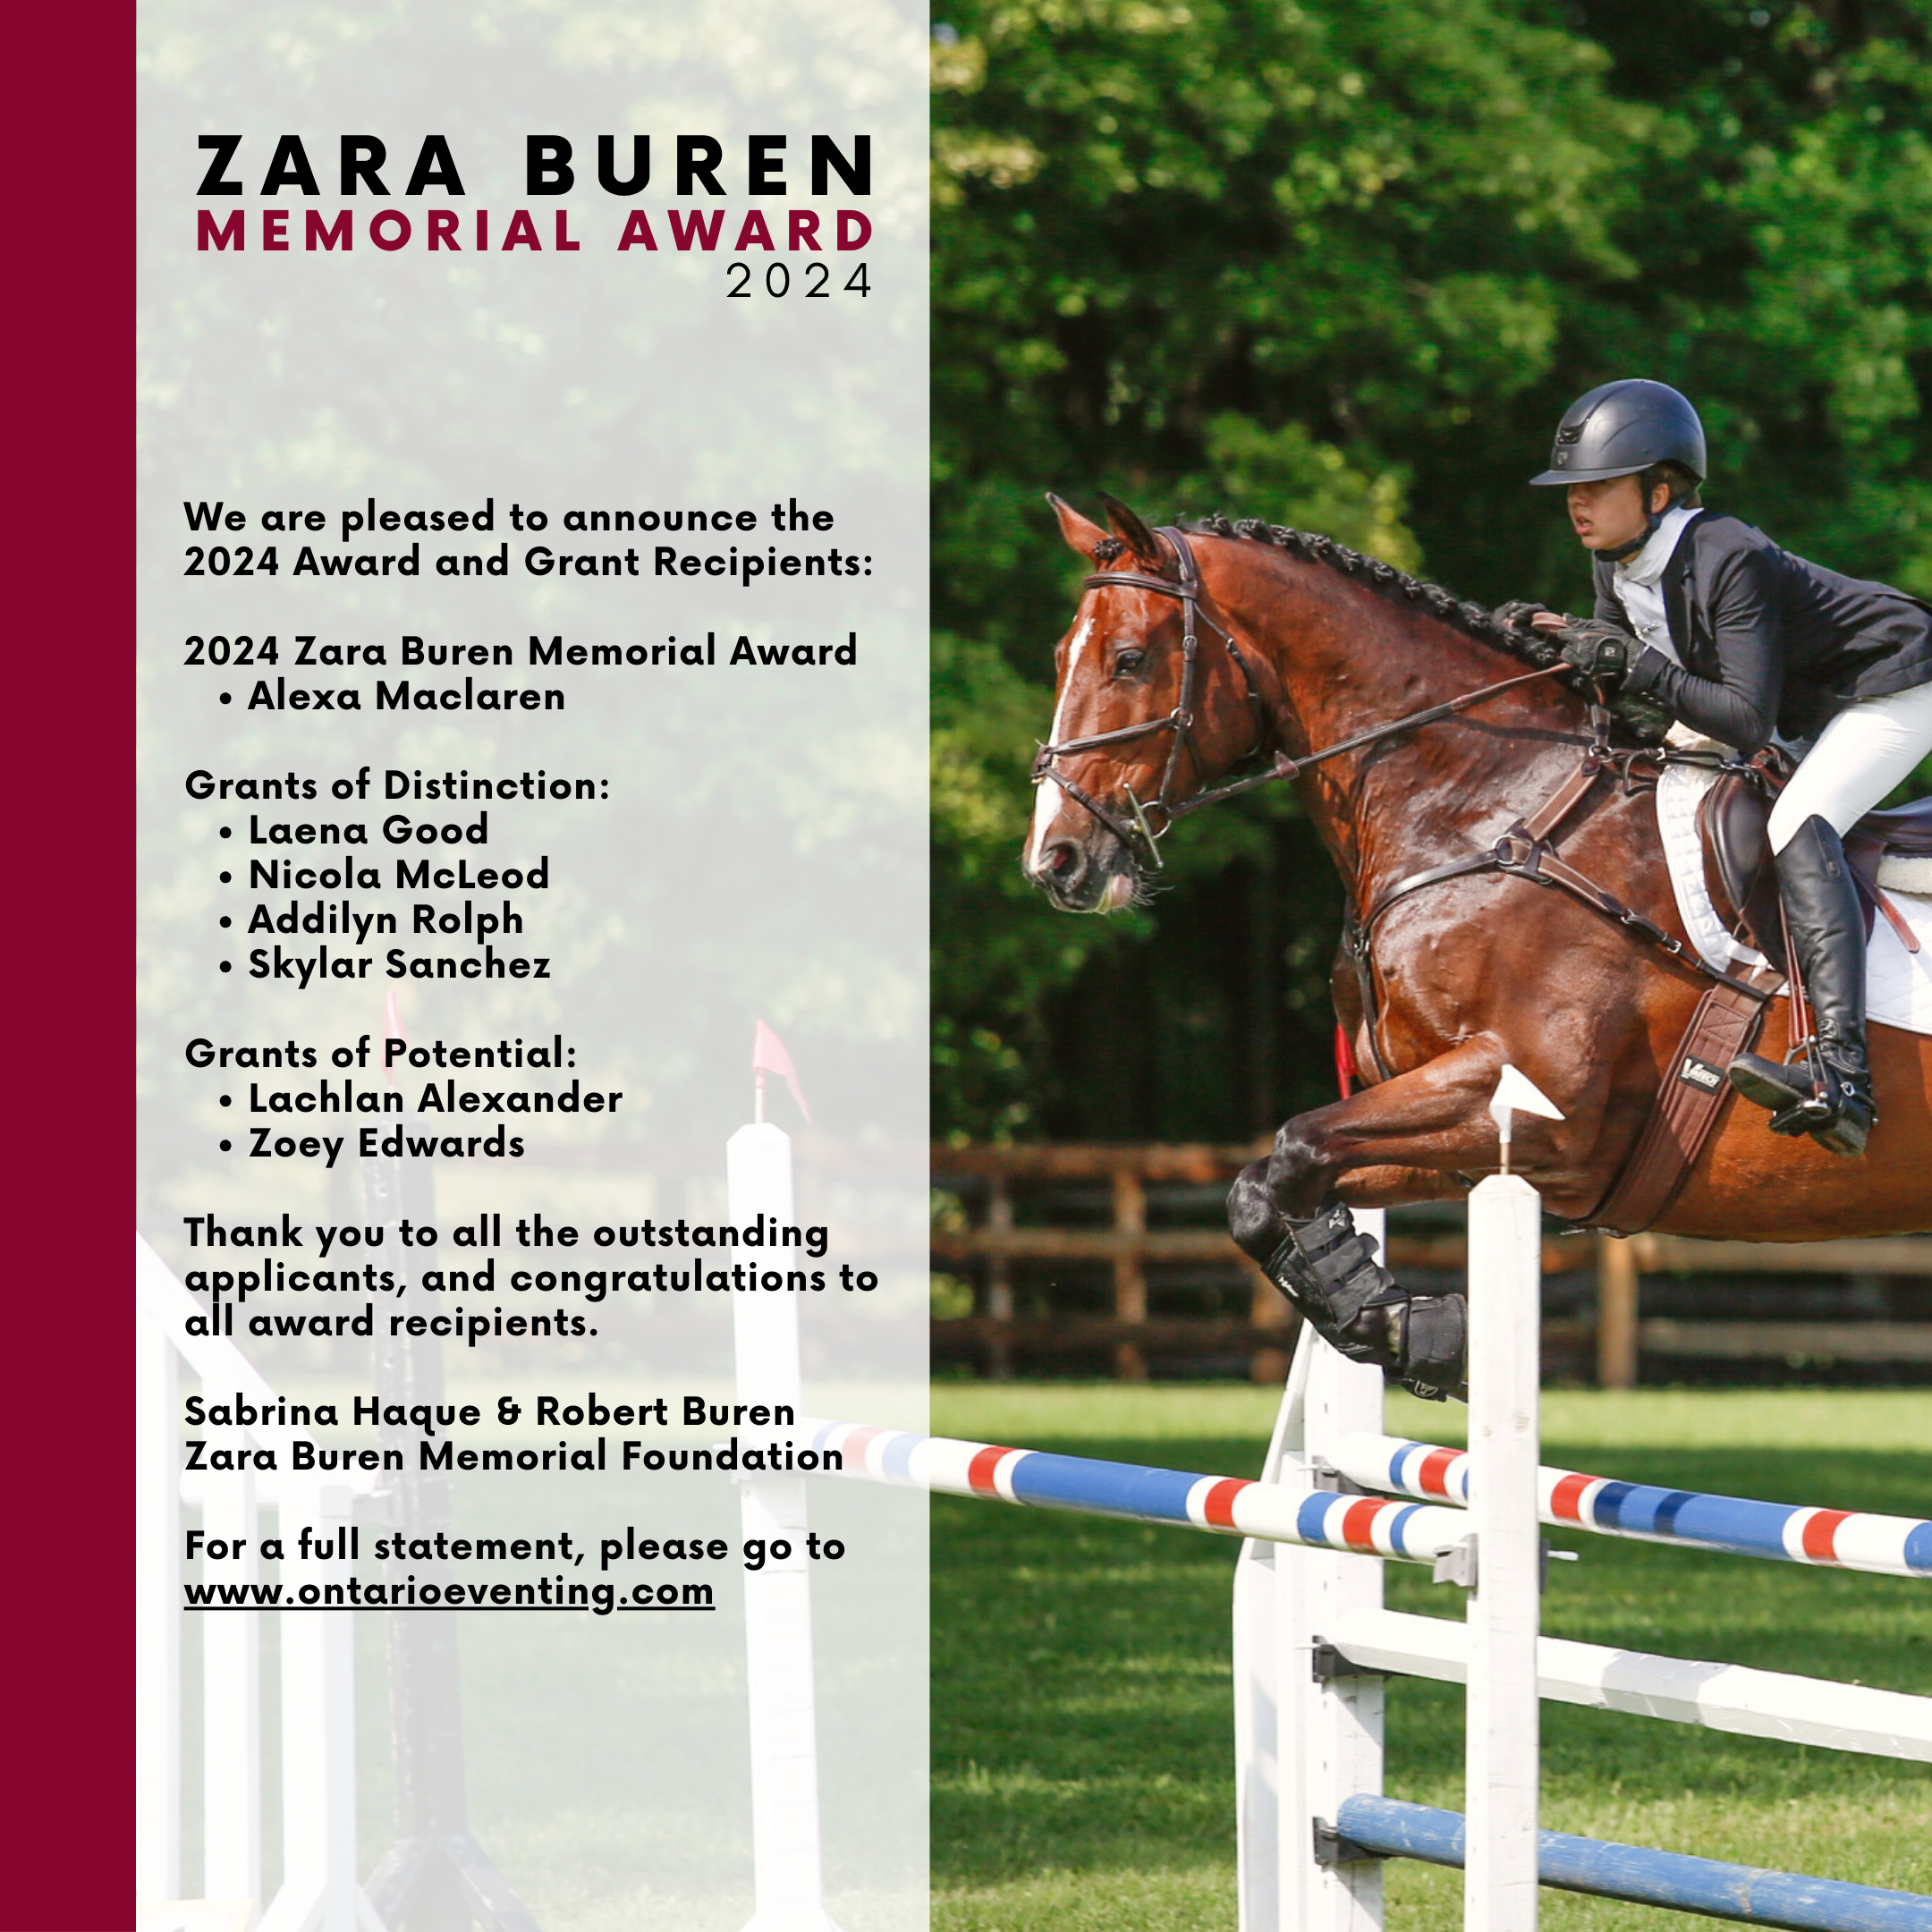 Zara Buren Memorial Award 2024 Recipient Alexa Maclaren